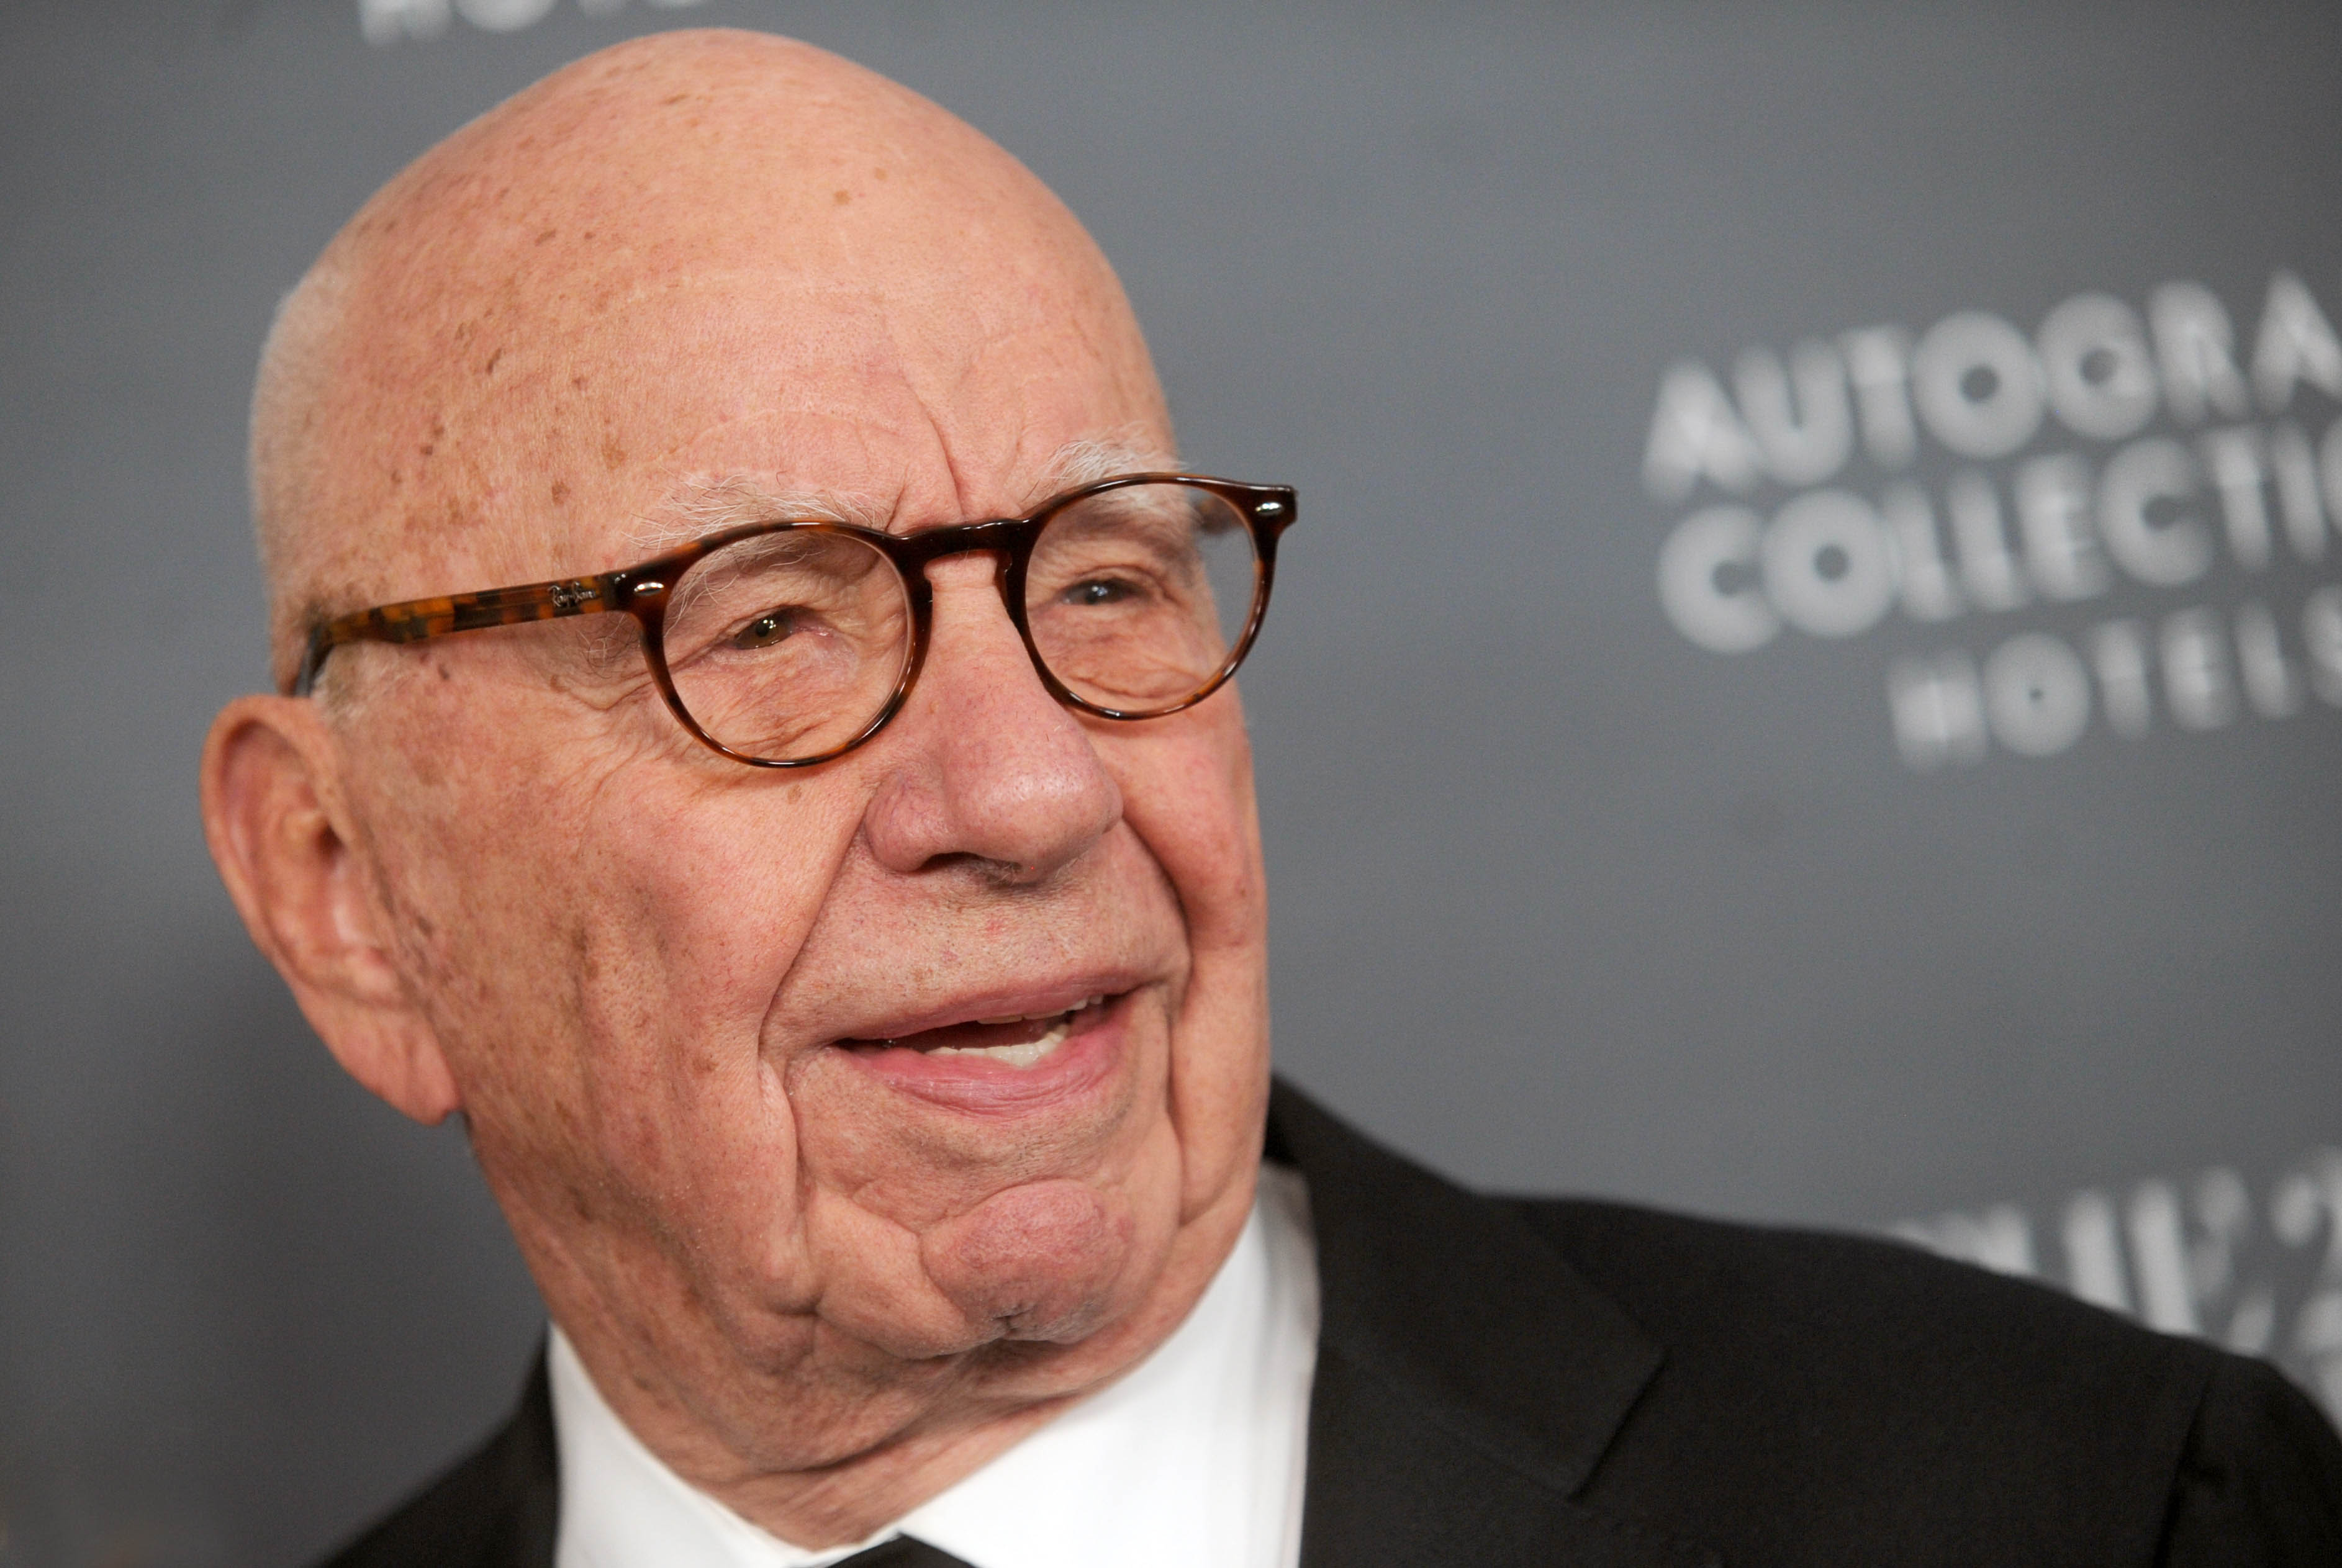 Rupert Murdoch Made $581 Million in One Day After Disney-Fox Deal